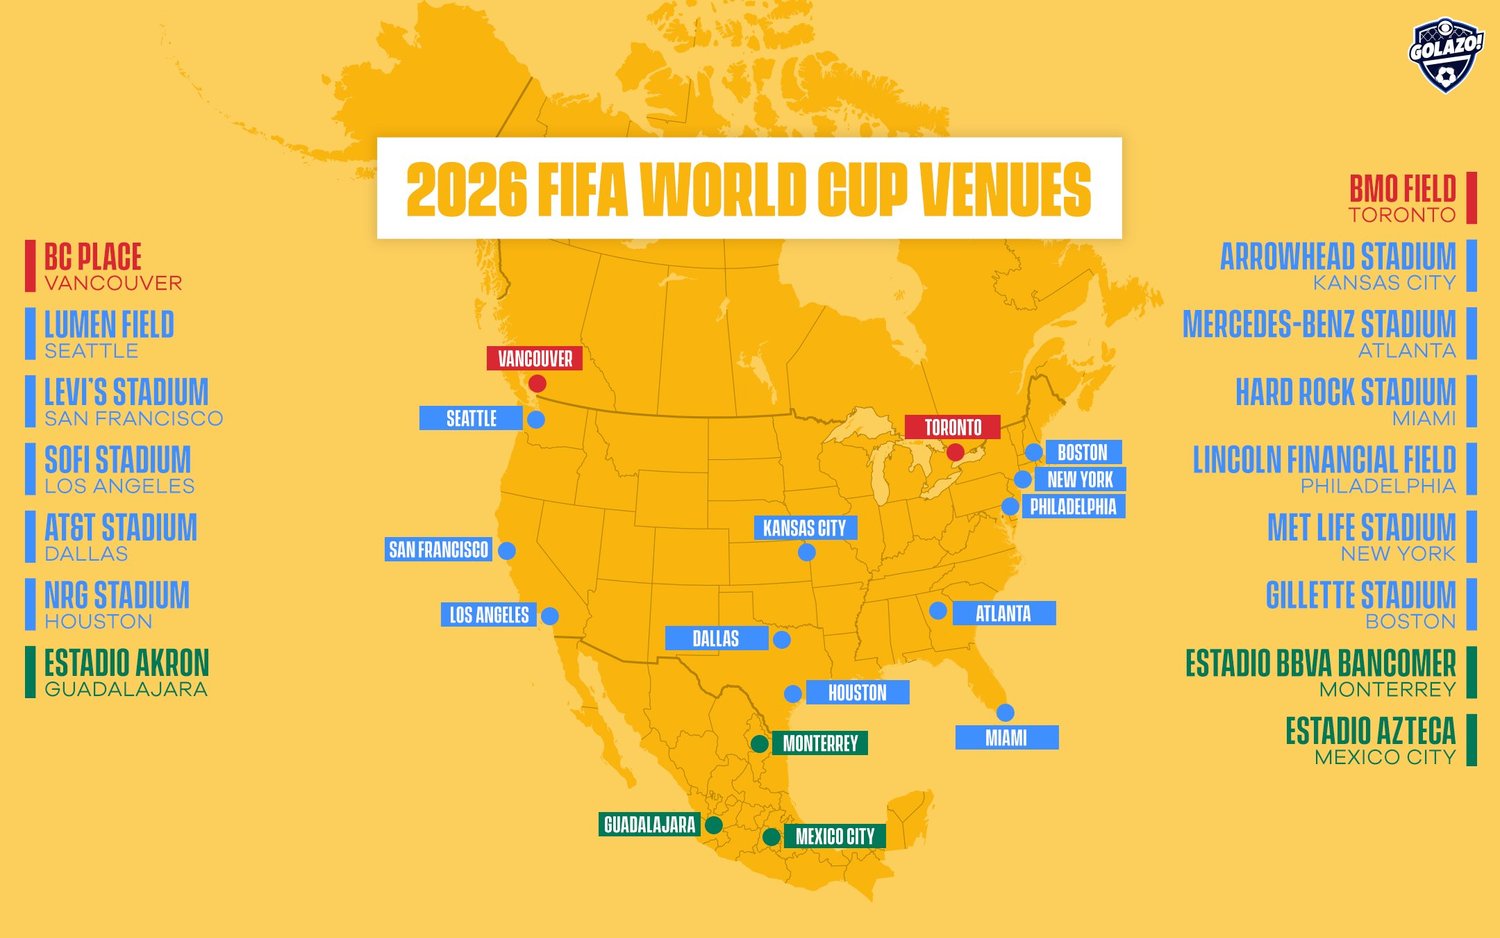 La FIFA reveló el calendario del Mundial 2026! - Los pasaportes más poderosos del mundo para 2024 ✈️ Foro General de Viajes